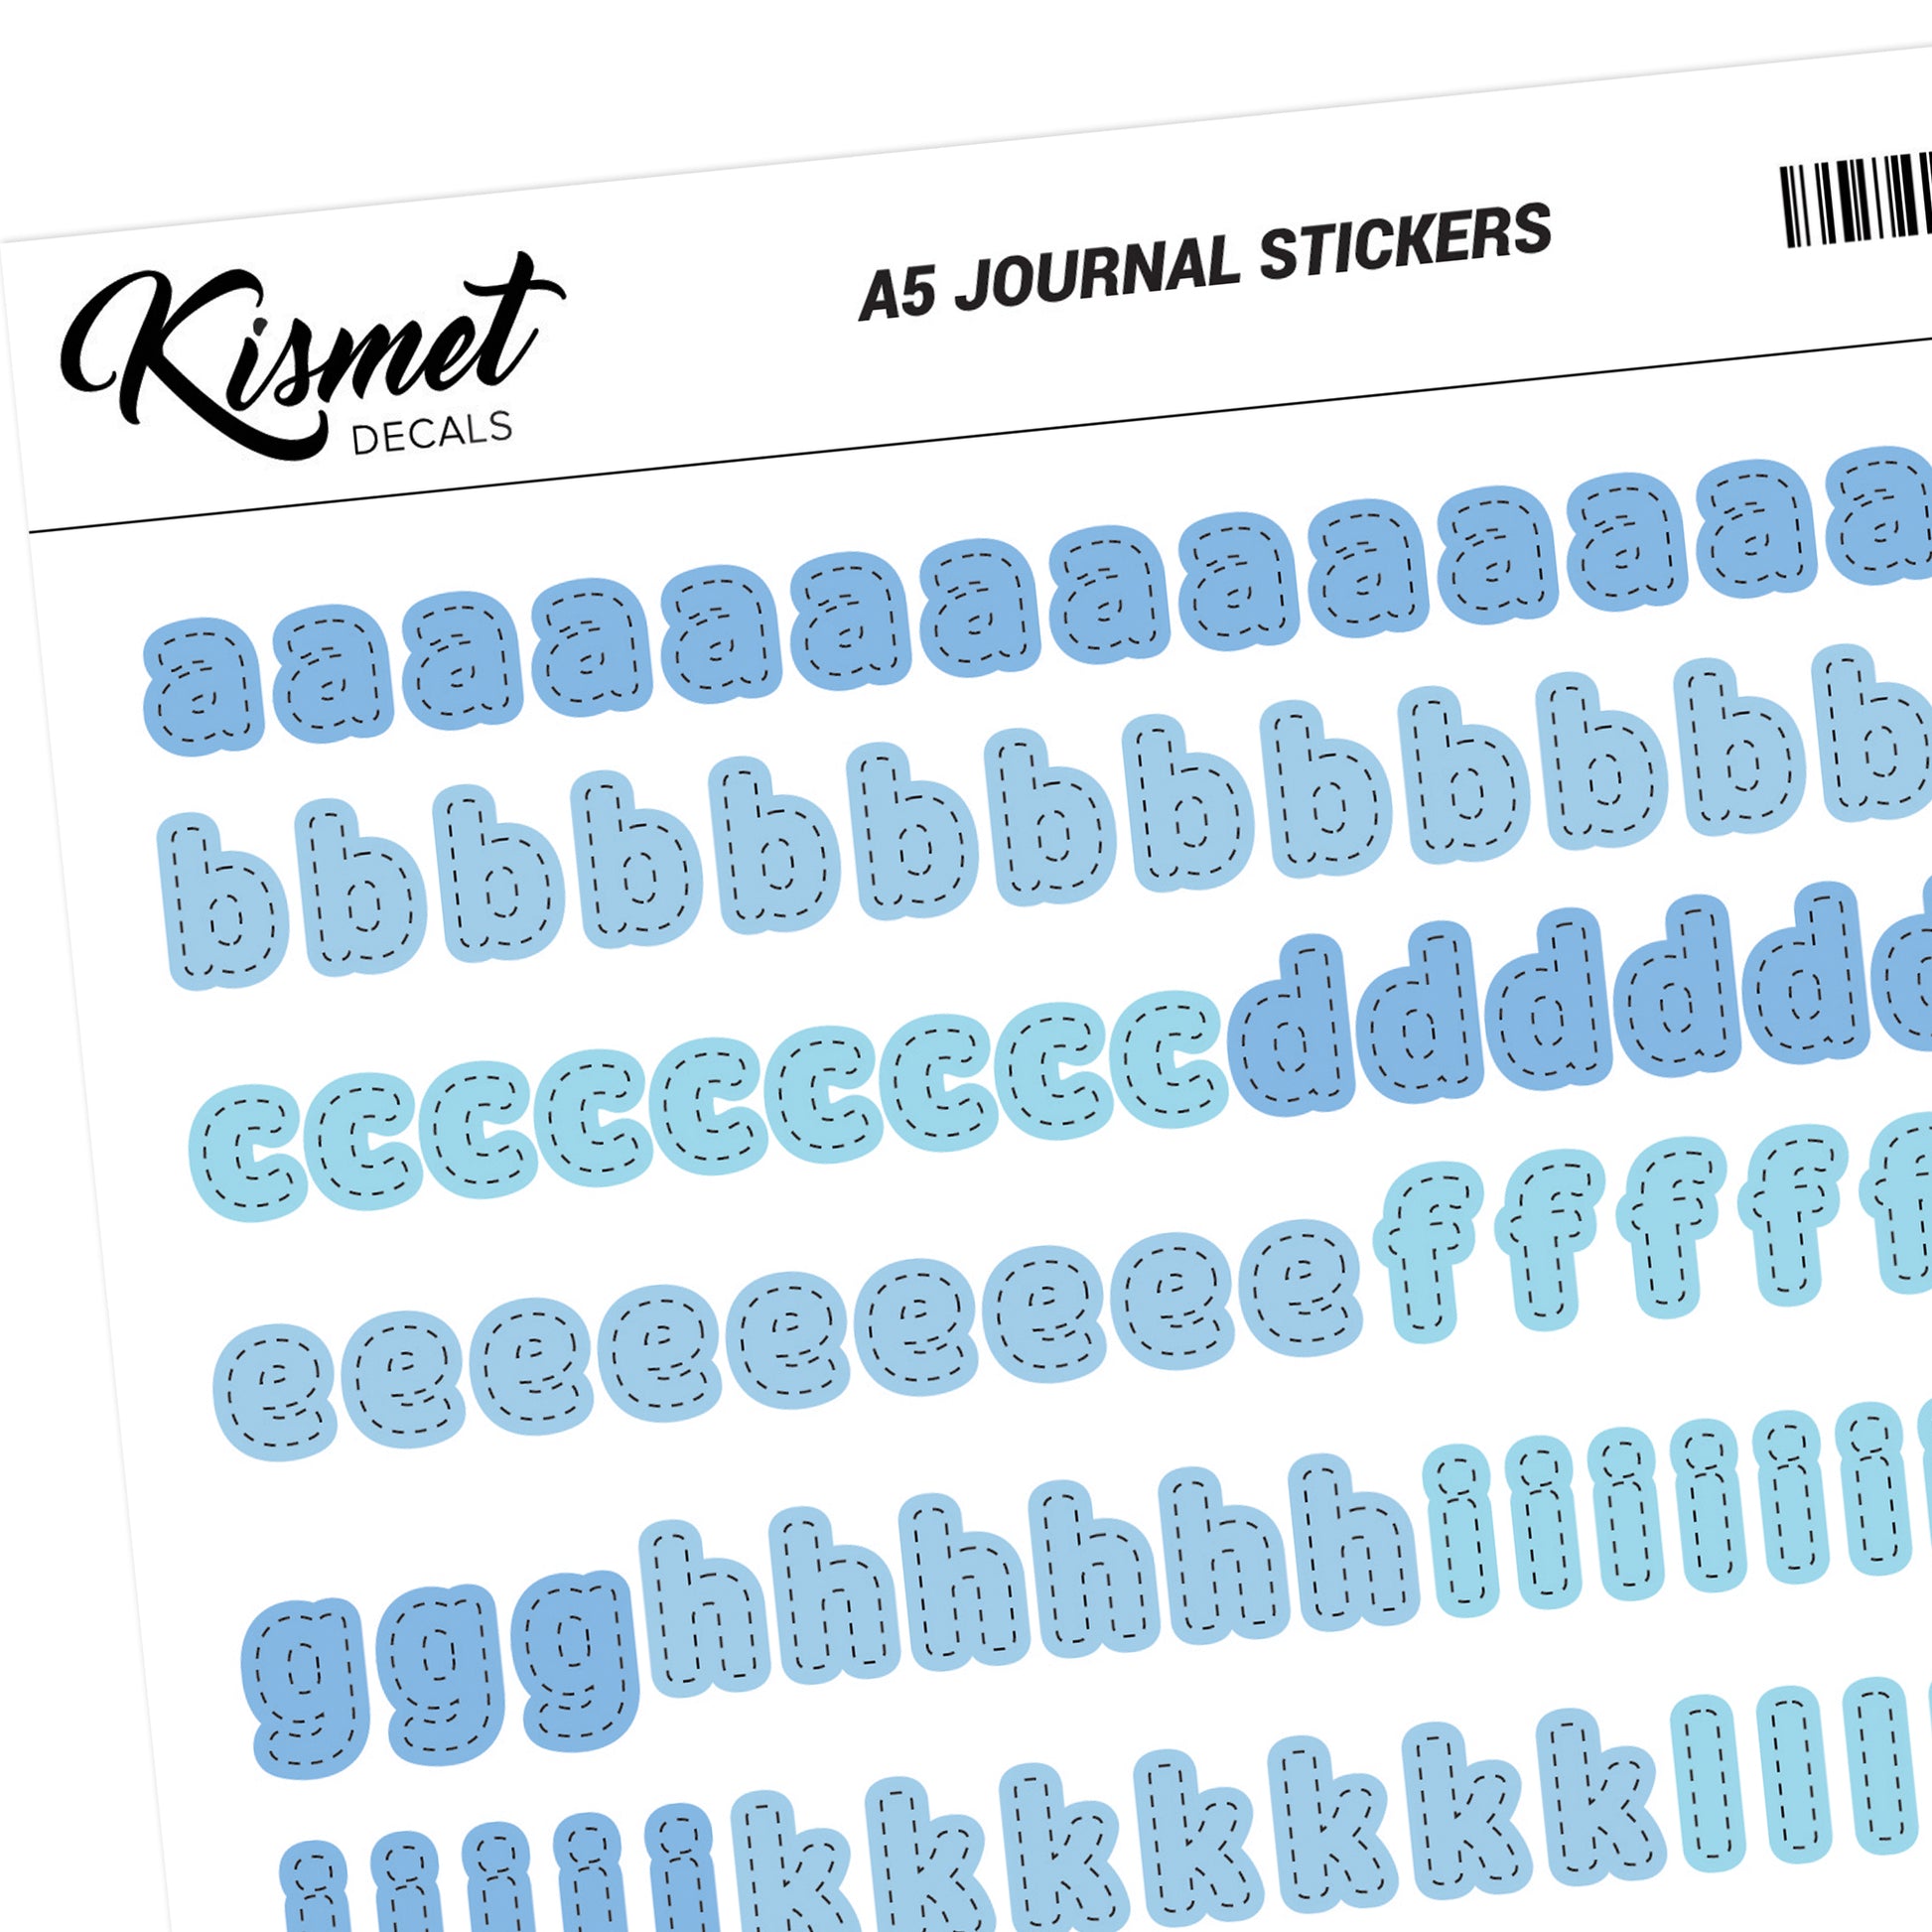 A5 Capital Alphabets Journal Stickers - 5.3 X 8.3 - Craft Scrapbook